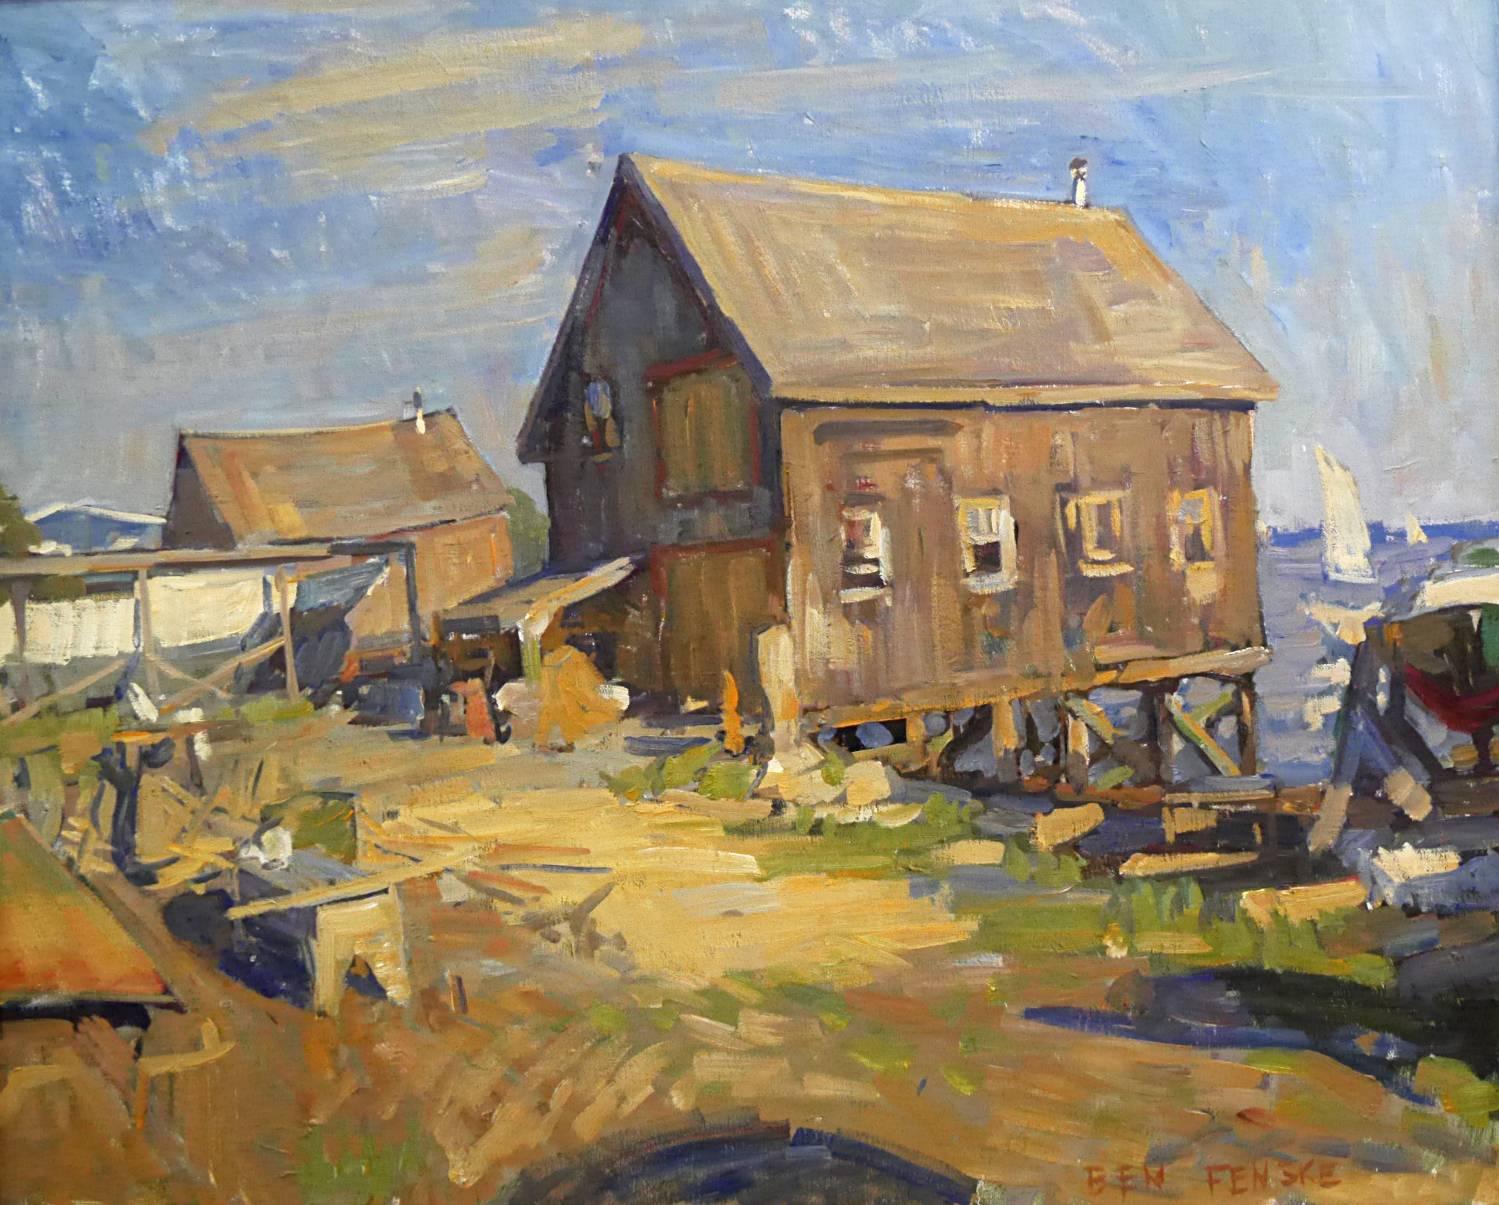 "Boathouse, Evening Light" peinture à l'huile impressionniste contemporaine en plein air.